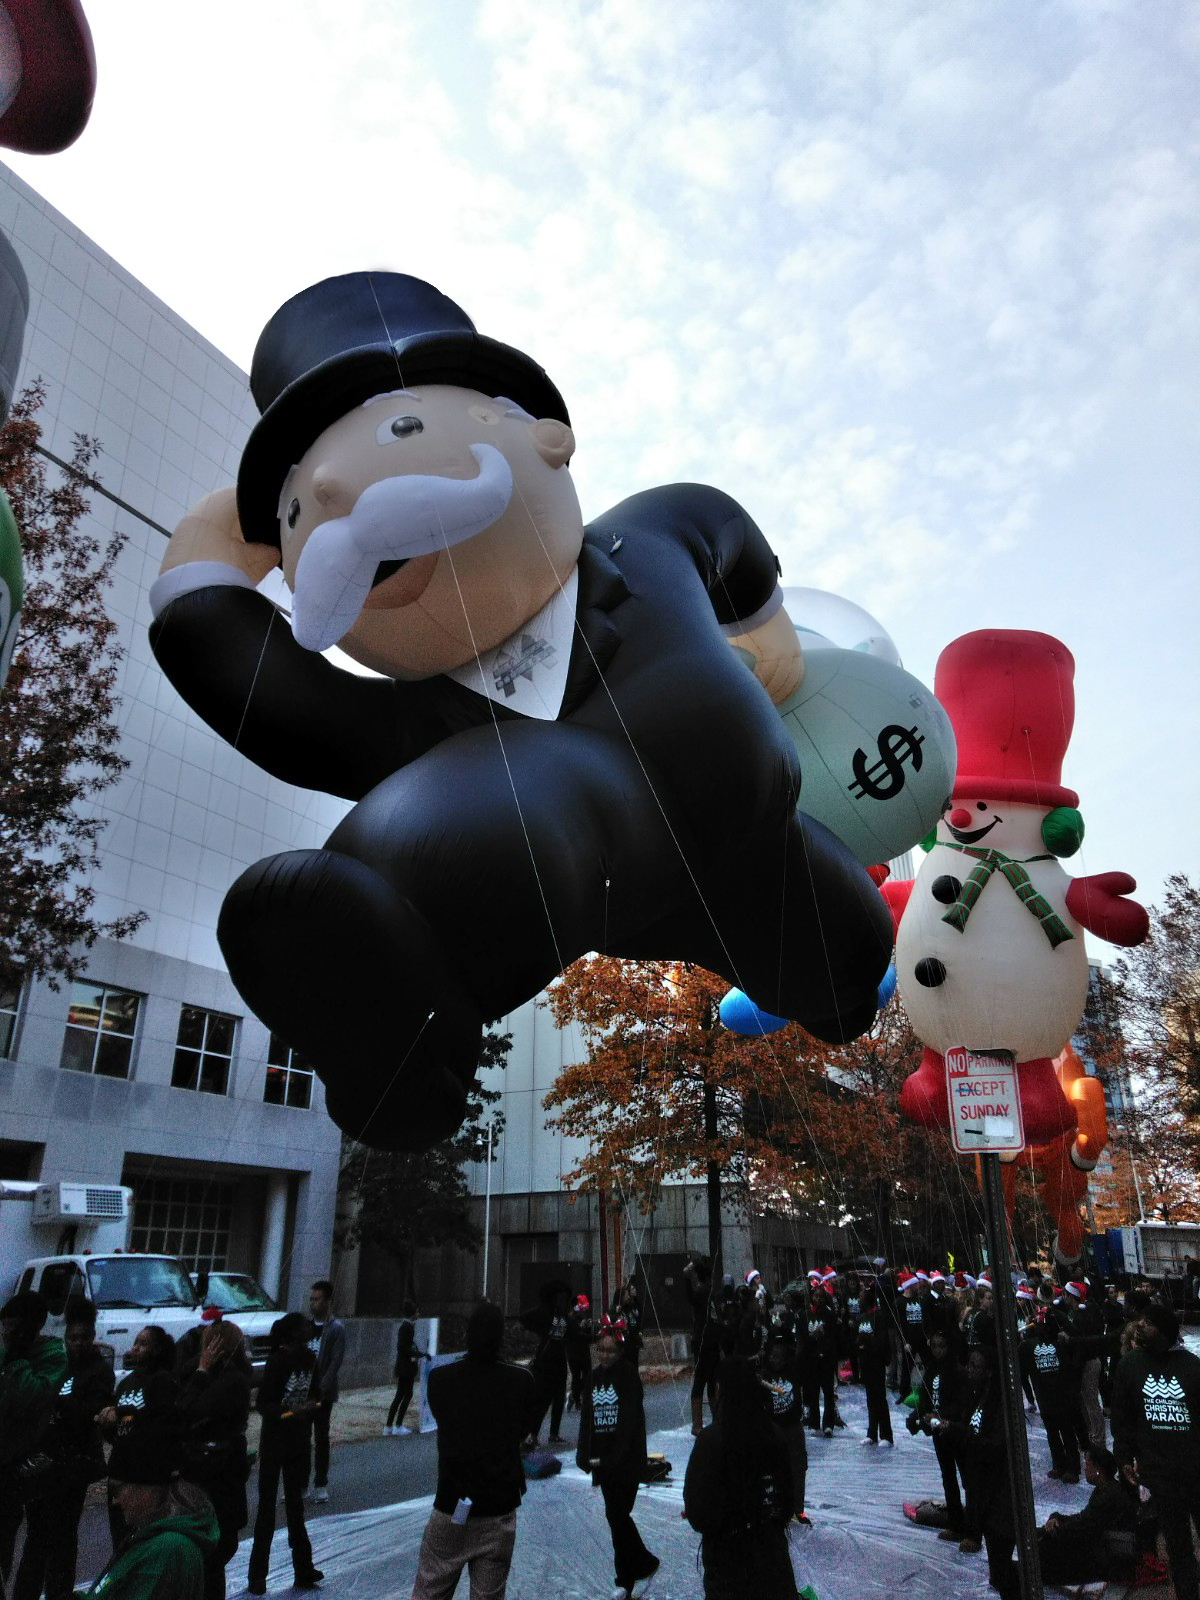 Mr Monopoly Parade Balloon 2